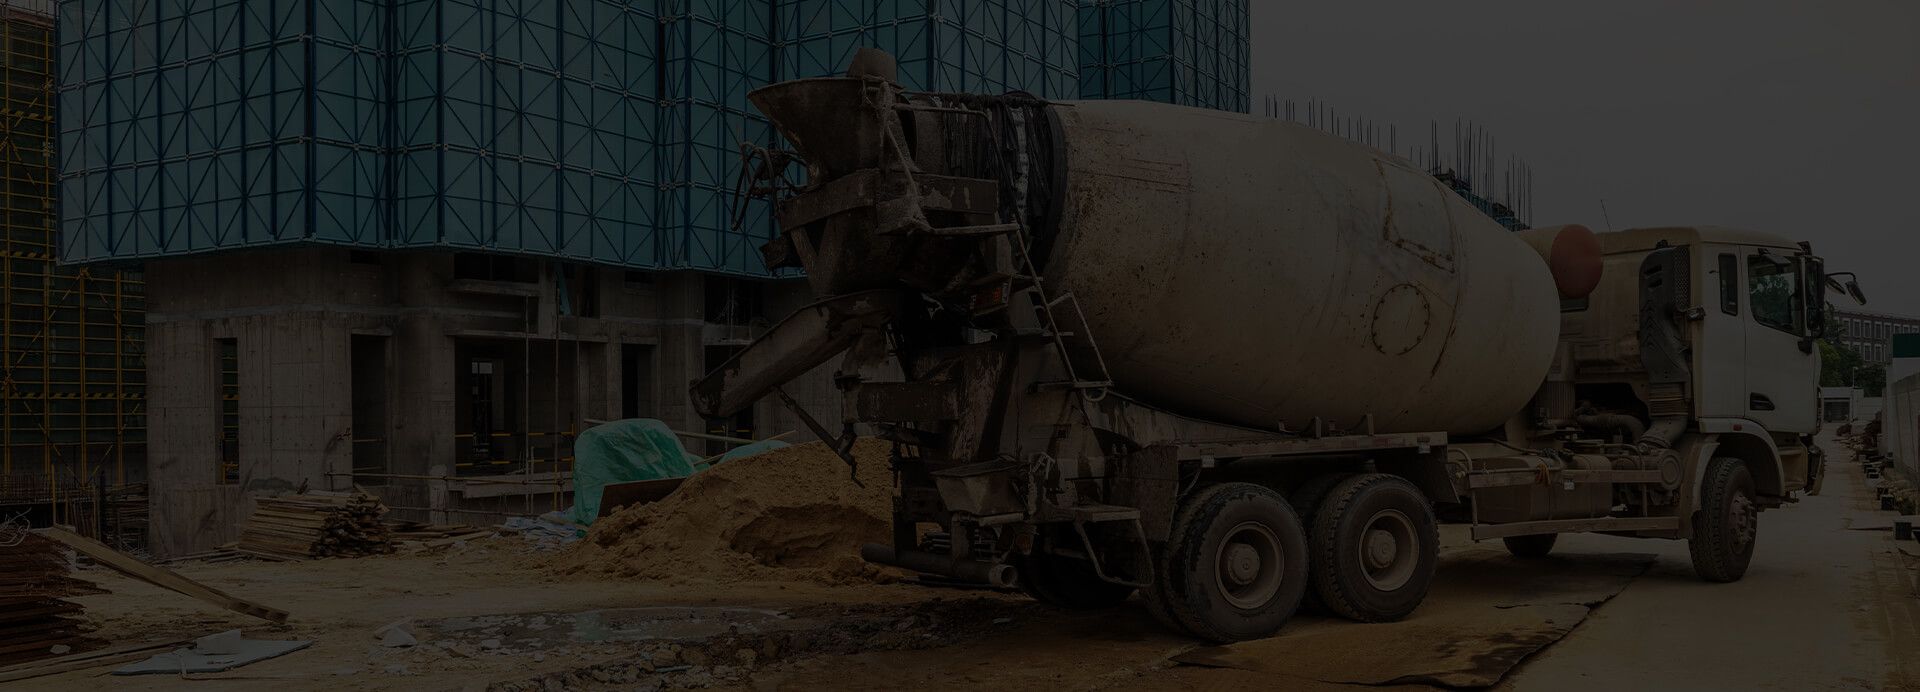 precast concrete construction process